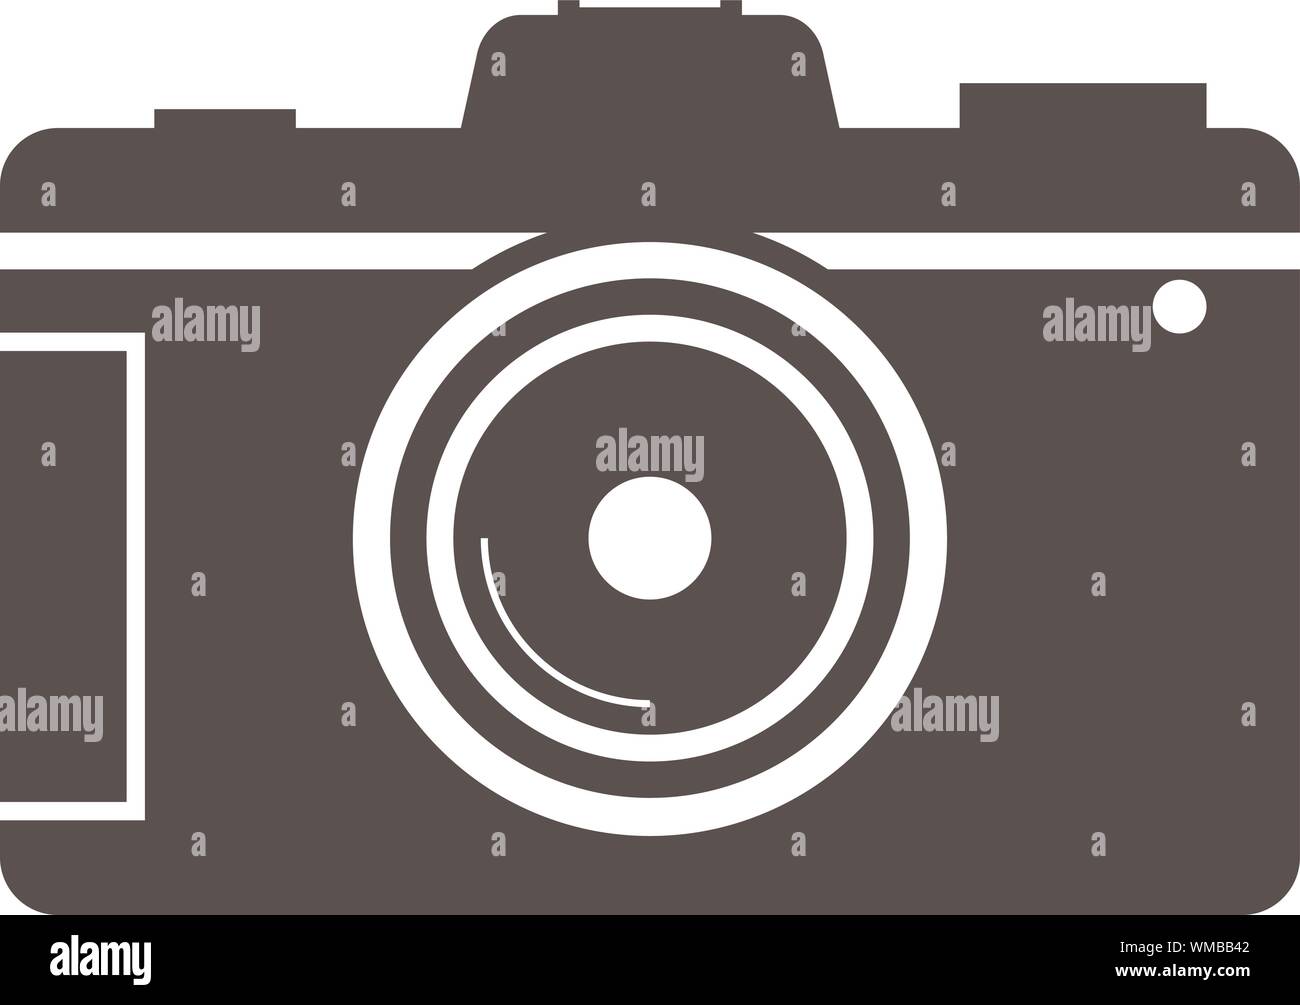 Einfache flache schwarze und weiße DSLR-Kamera symbol Vektor illustration Stock Vektor